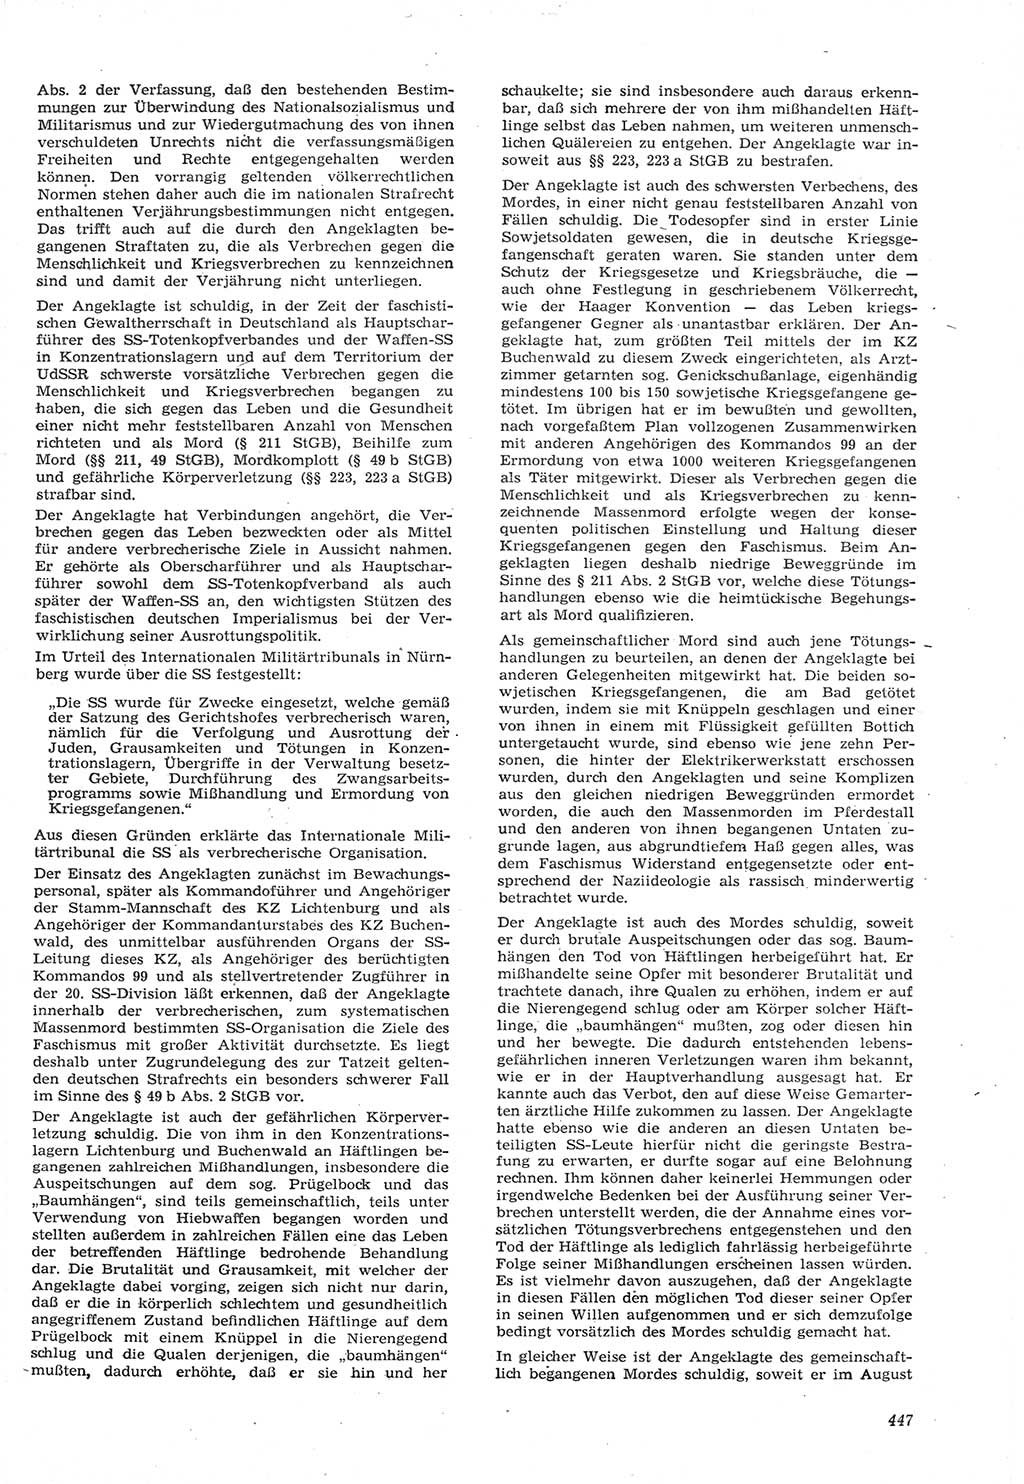 Neue Justiz (NJ), Zeitschrift für Recht und Rechtswissenschaft [Deutsche Demokratische Republik (DDR)], 15. Jahrgang 1961, Seite 447 (NJ DDR 1961, S. 447)